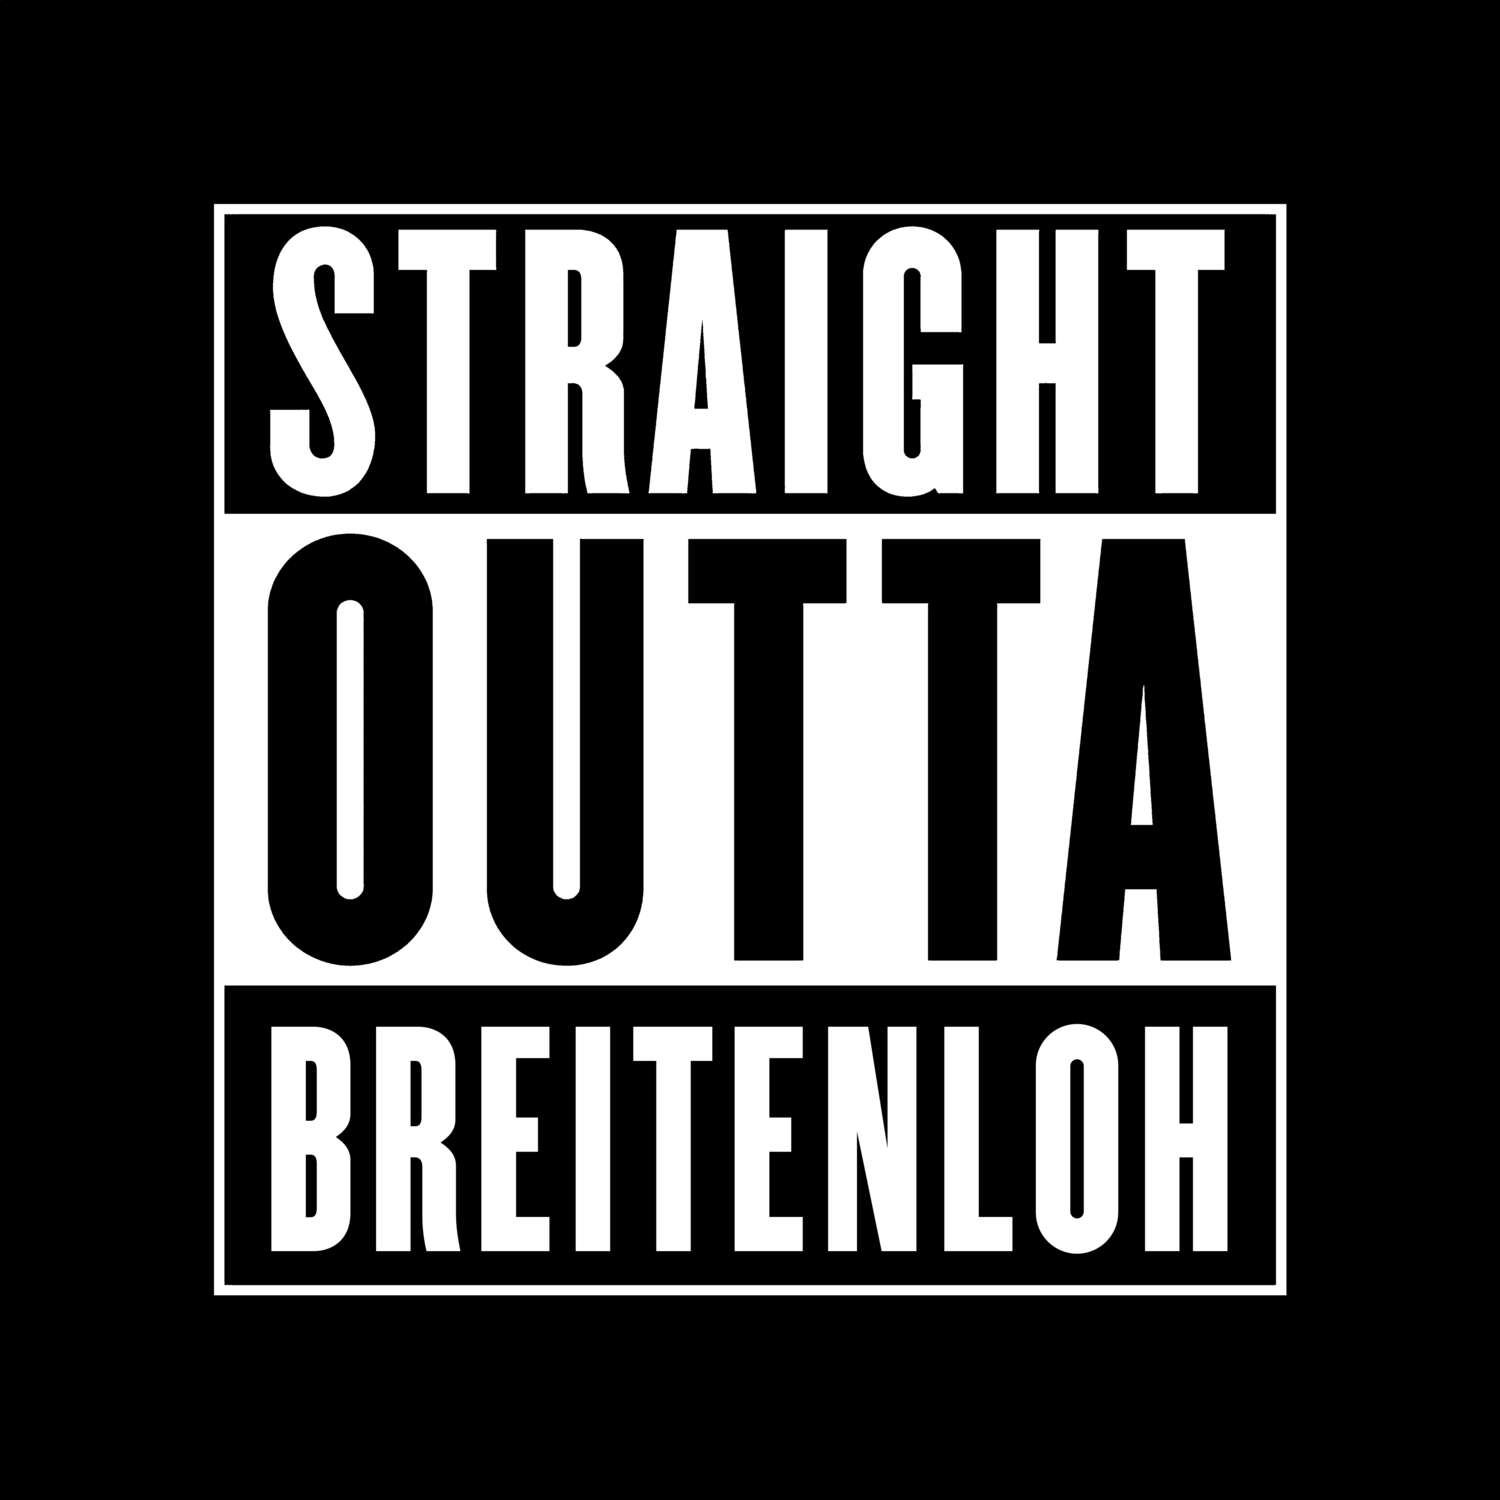 Breitenloh T-Shirt »Straight Outta«